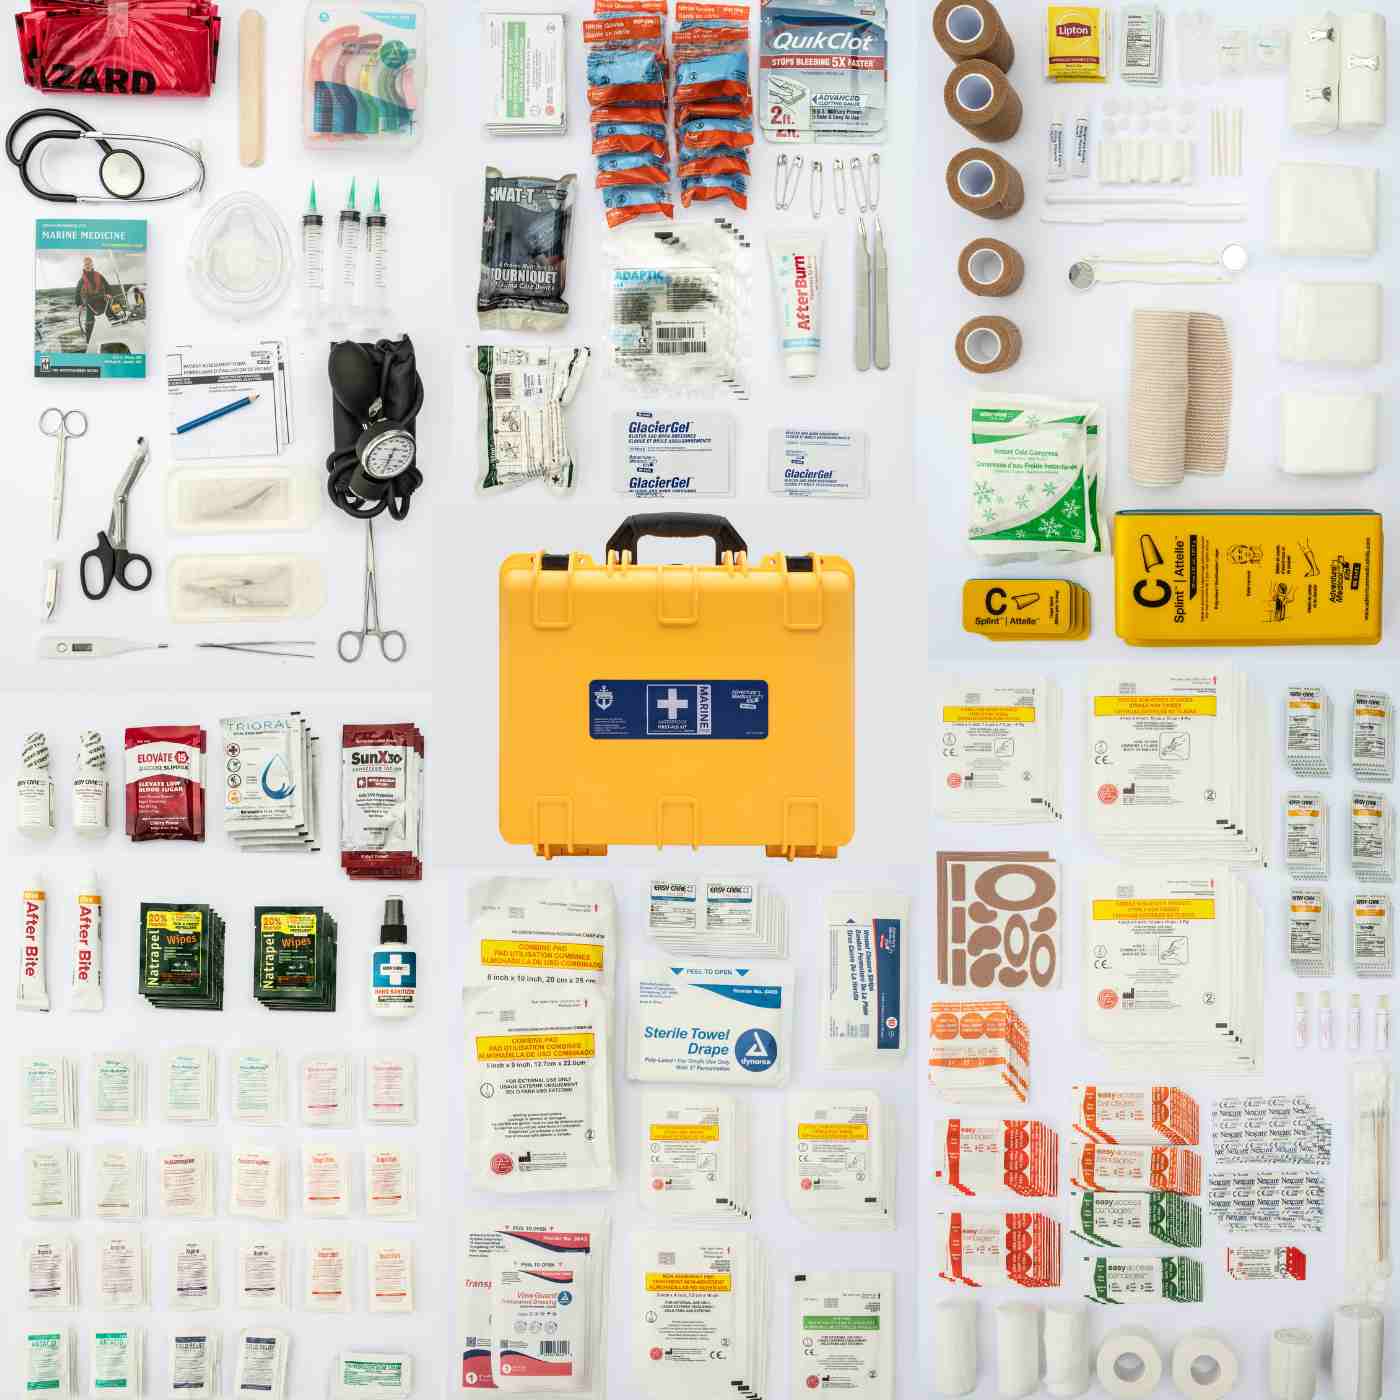 Marine Series 3500 First Aid Kit - Adventure Medical Kits